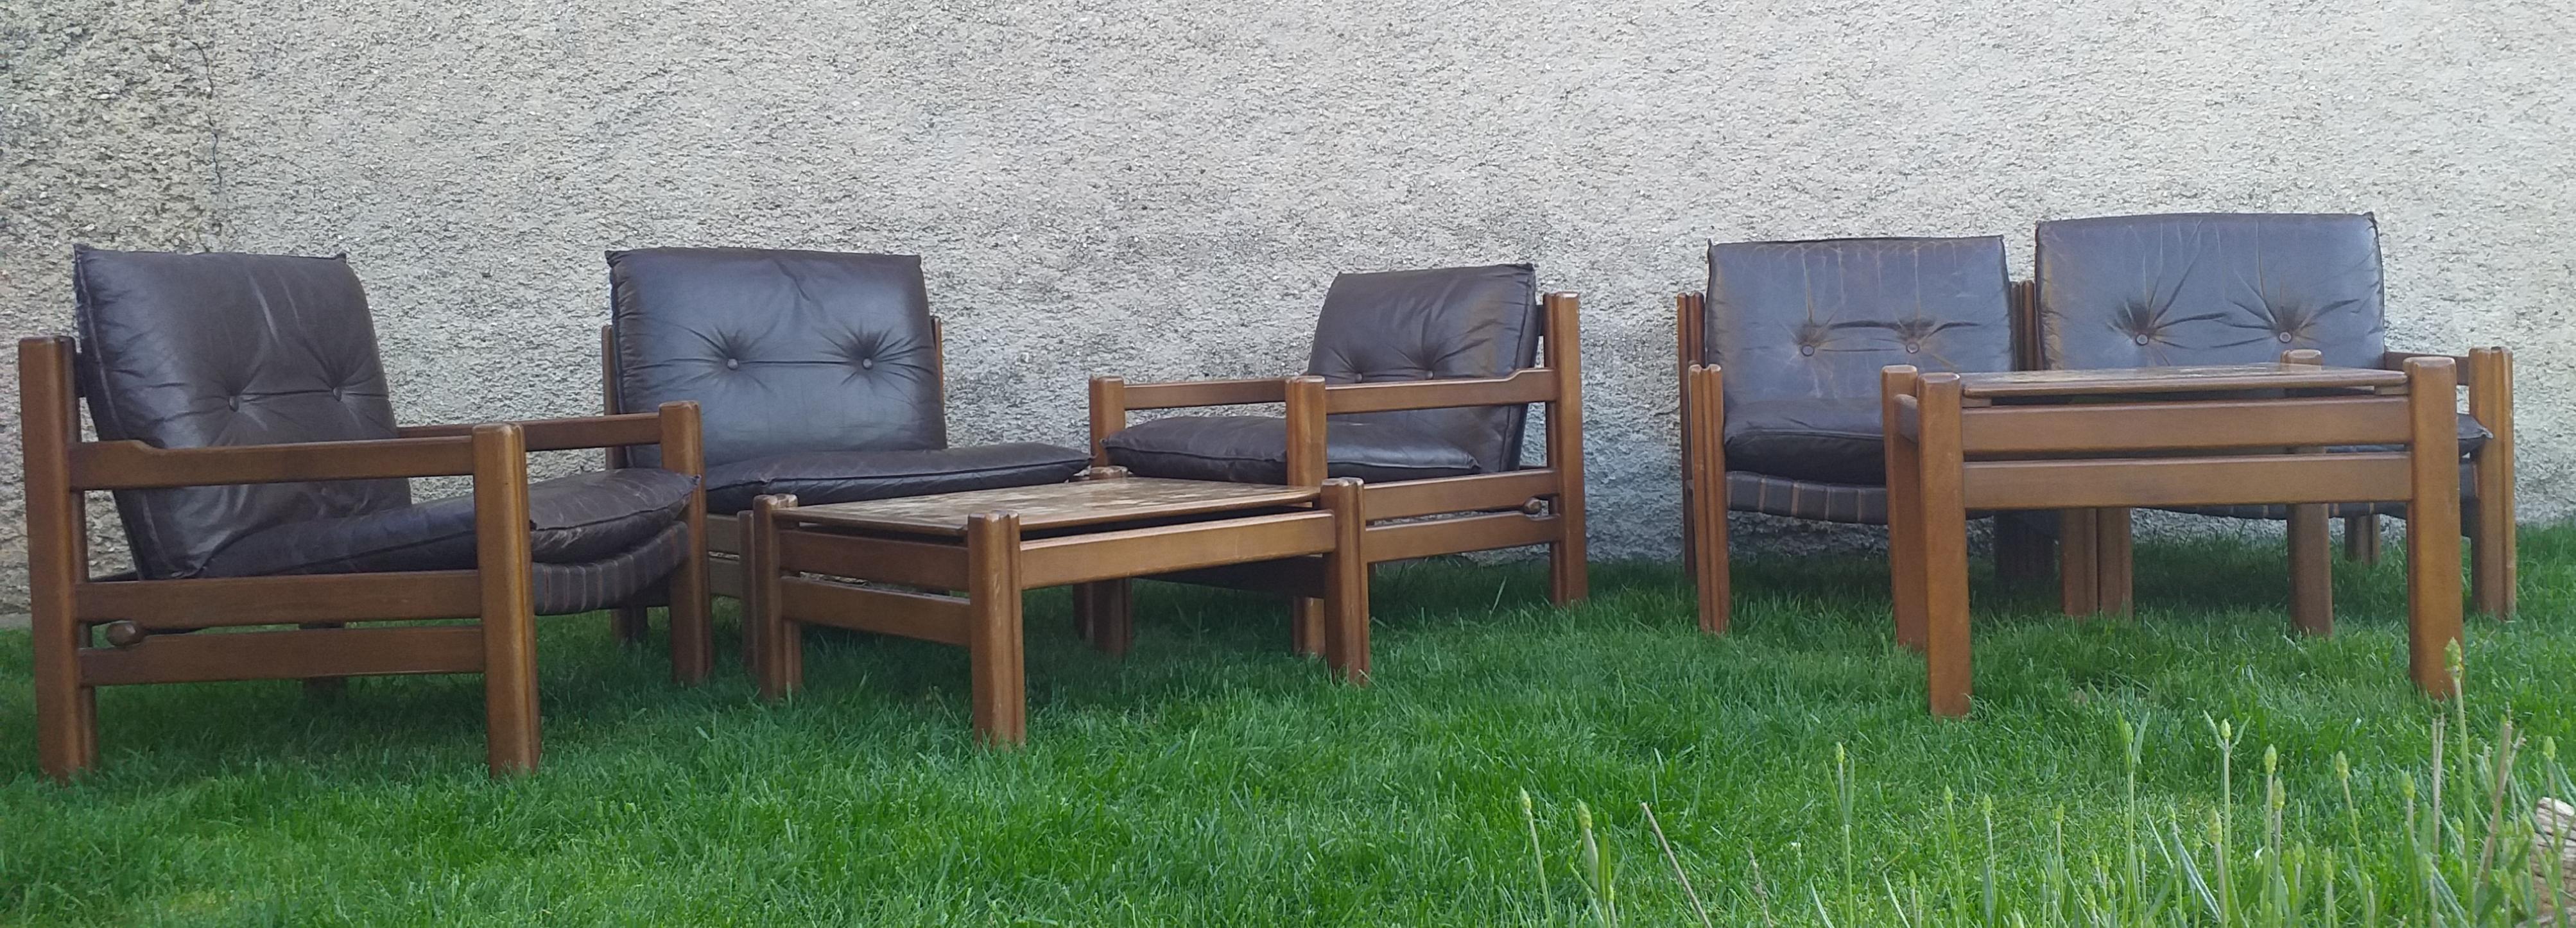 - Deux tables
- Un canapé deux places
- Trois chaises
- Très pratique et confortable.